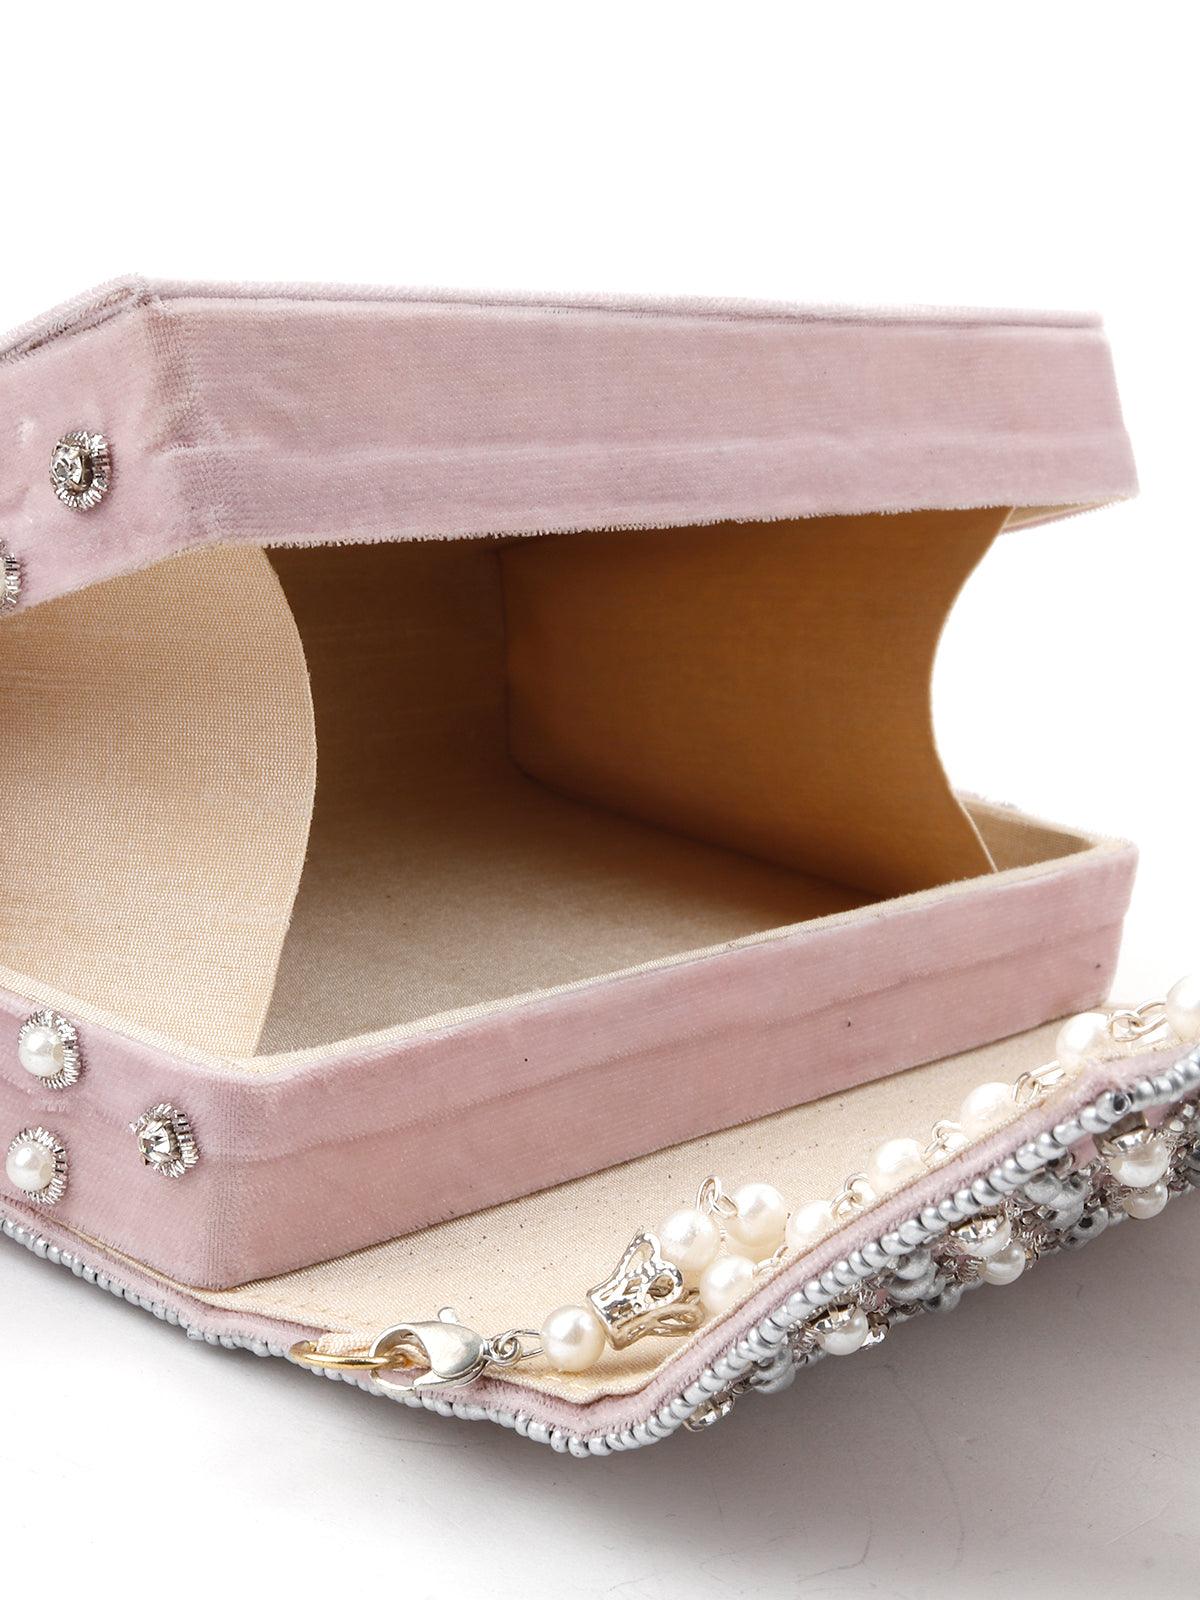 Lavender Embellished Box Clutch - Odette